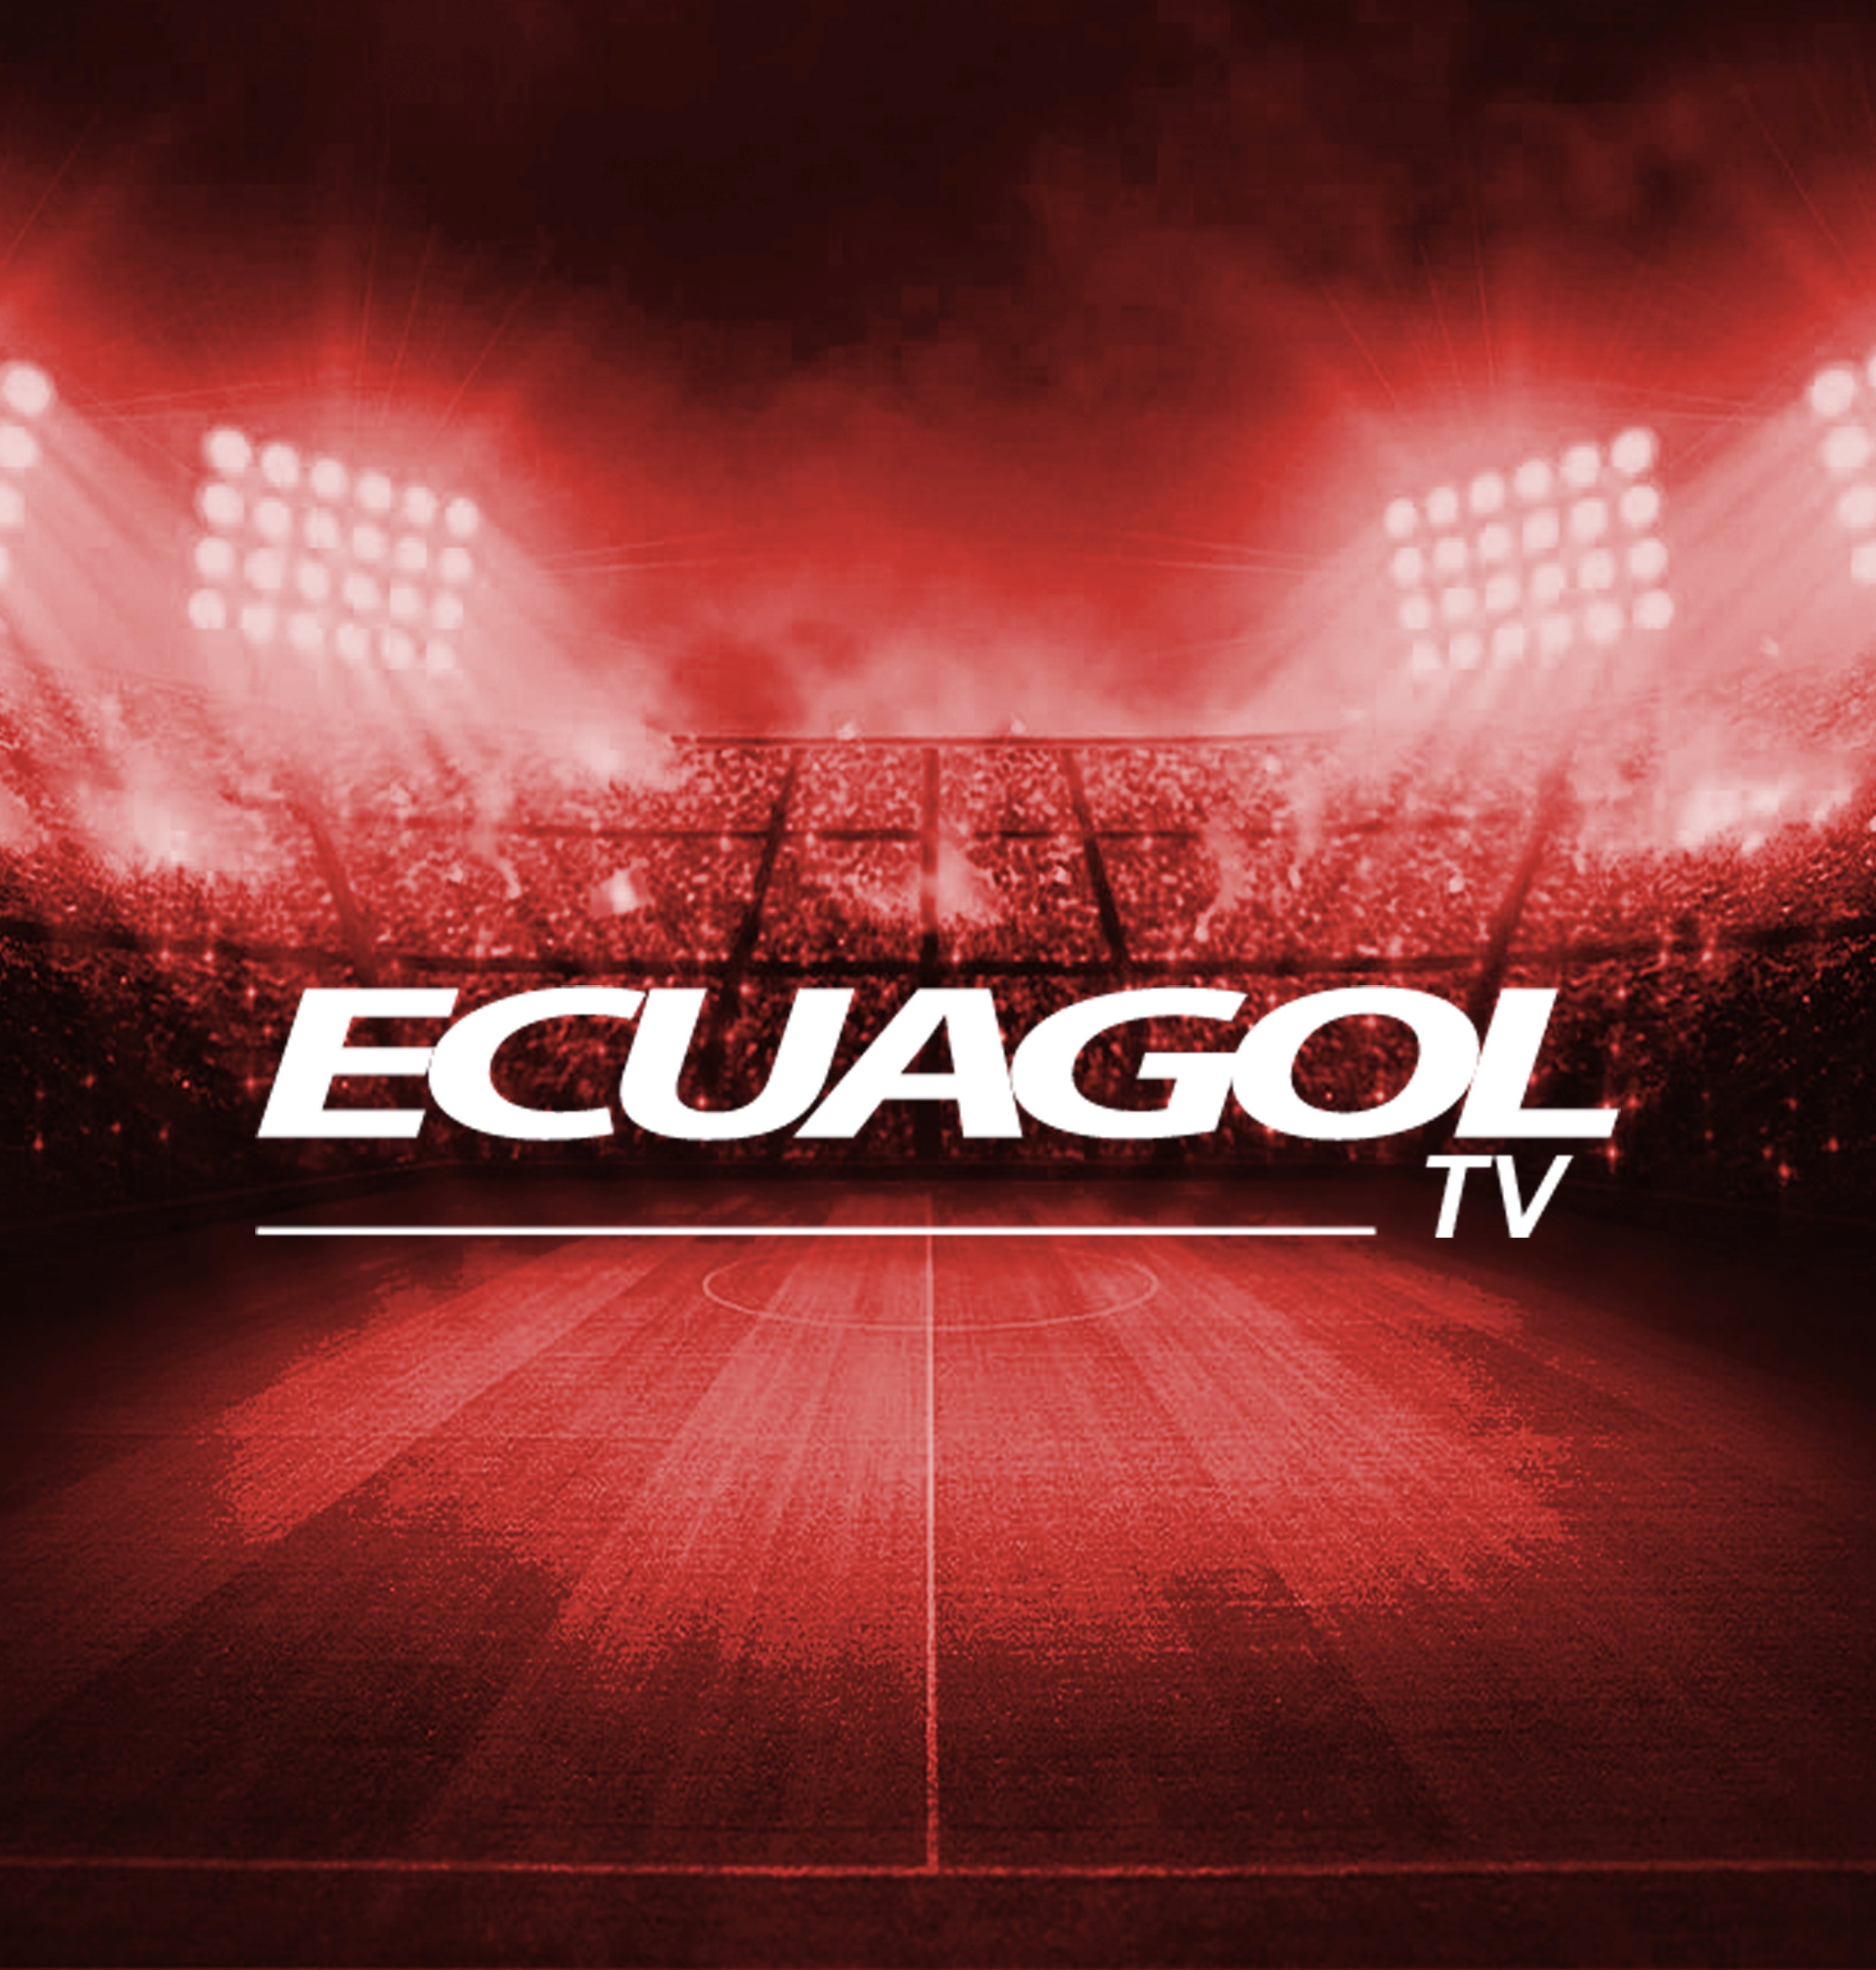 Ecuagol TV: Lunes a viernes desde las 15h00 a 17h00.
Síguenos por Facebook live de REVISTA ECUAGOL. 🎬